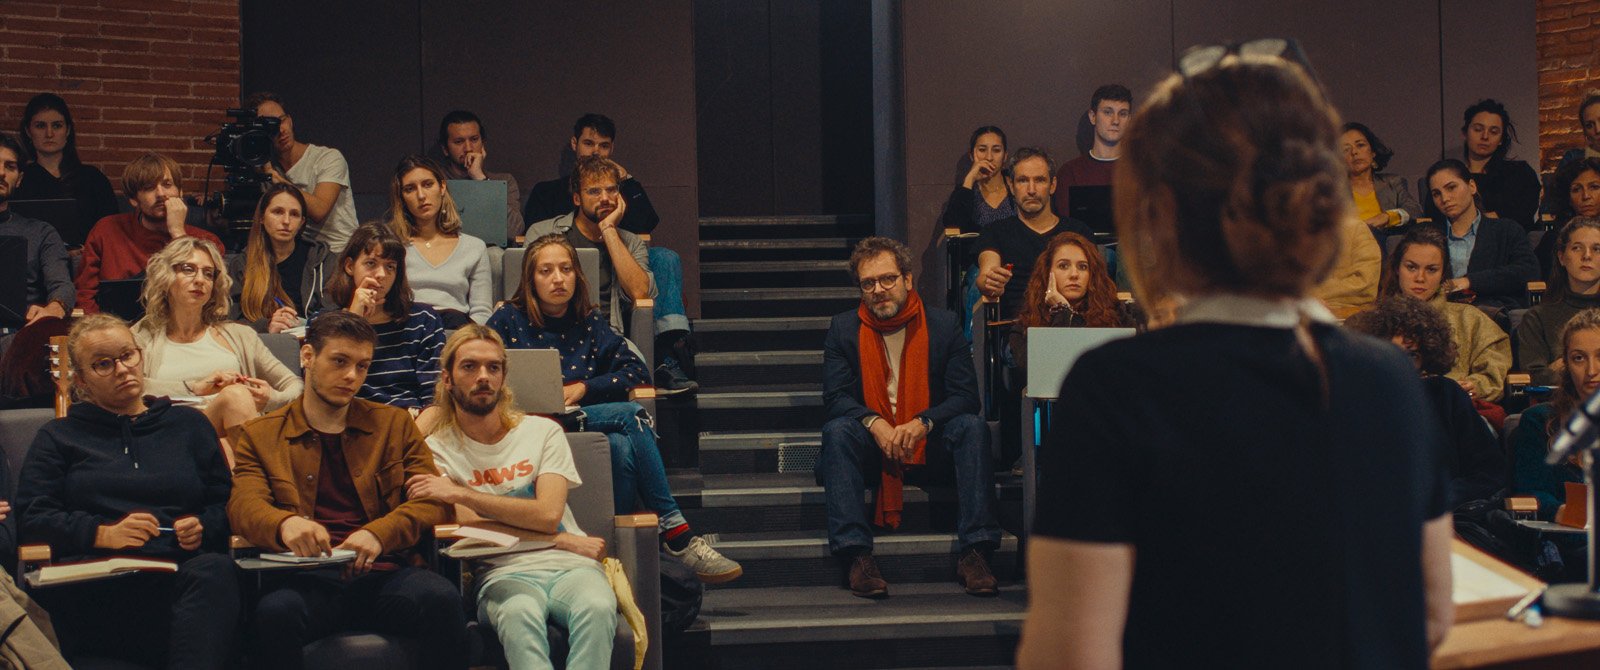 Noémie (Agnès Jaoui) de dos donnant une leçon de cinéma à des étudiants dans un amphi